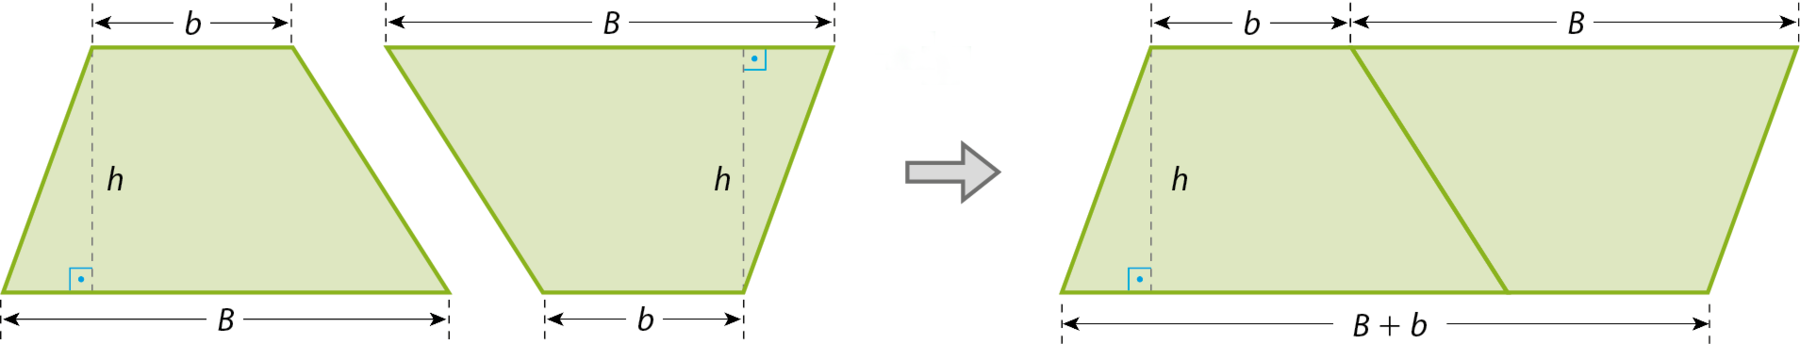 Ilustração. Dois trapézios com base menor medindo b e base maior B e altura h. O segundo trapézio está de ponta cabeça. Seta para a direita com os dois trapézios unidos, formando um paralelogramo, sua base superior medindo b + B e sua base inferior medindo B + b e altura h.